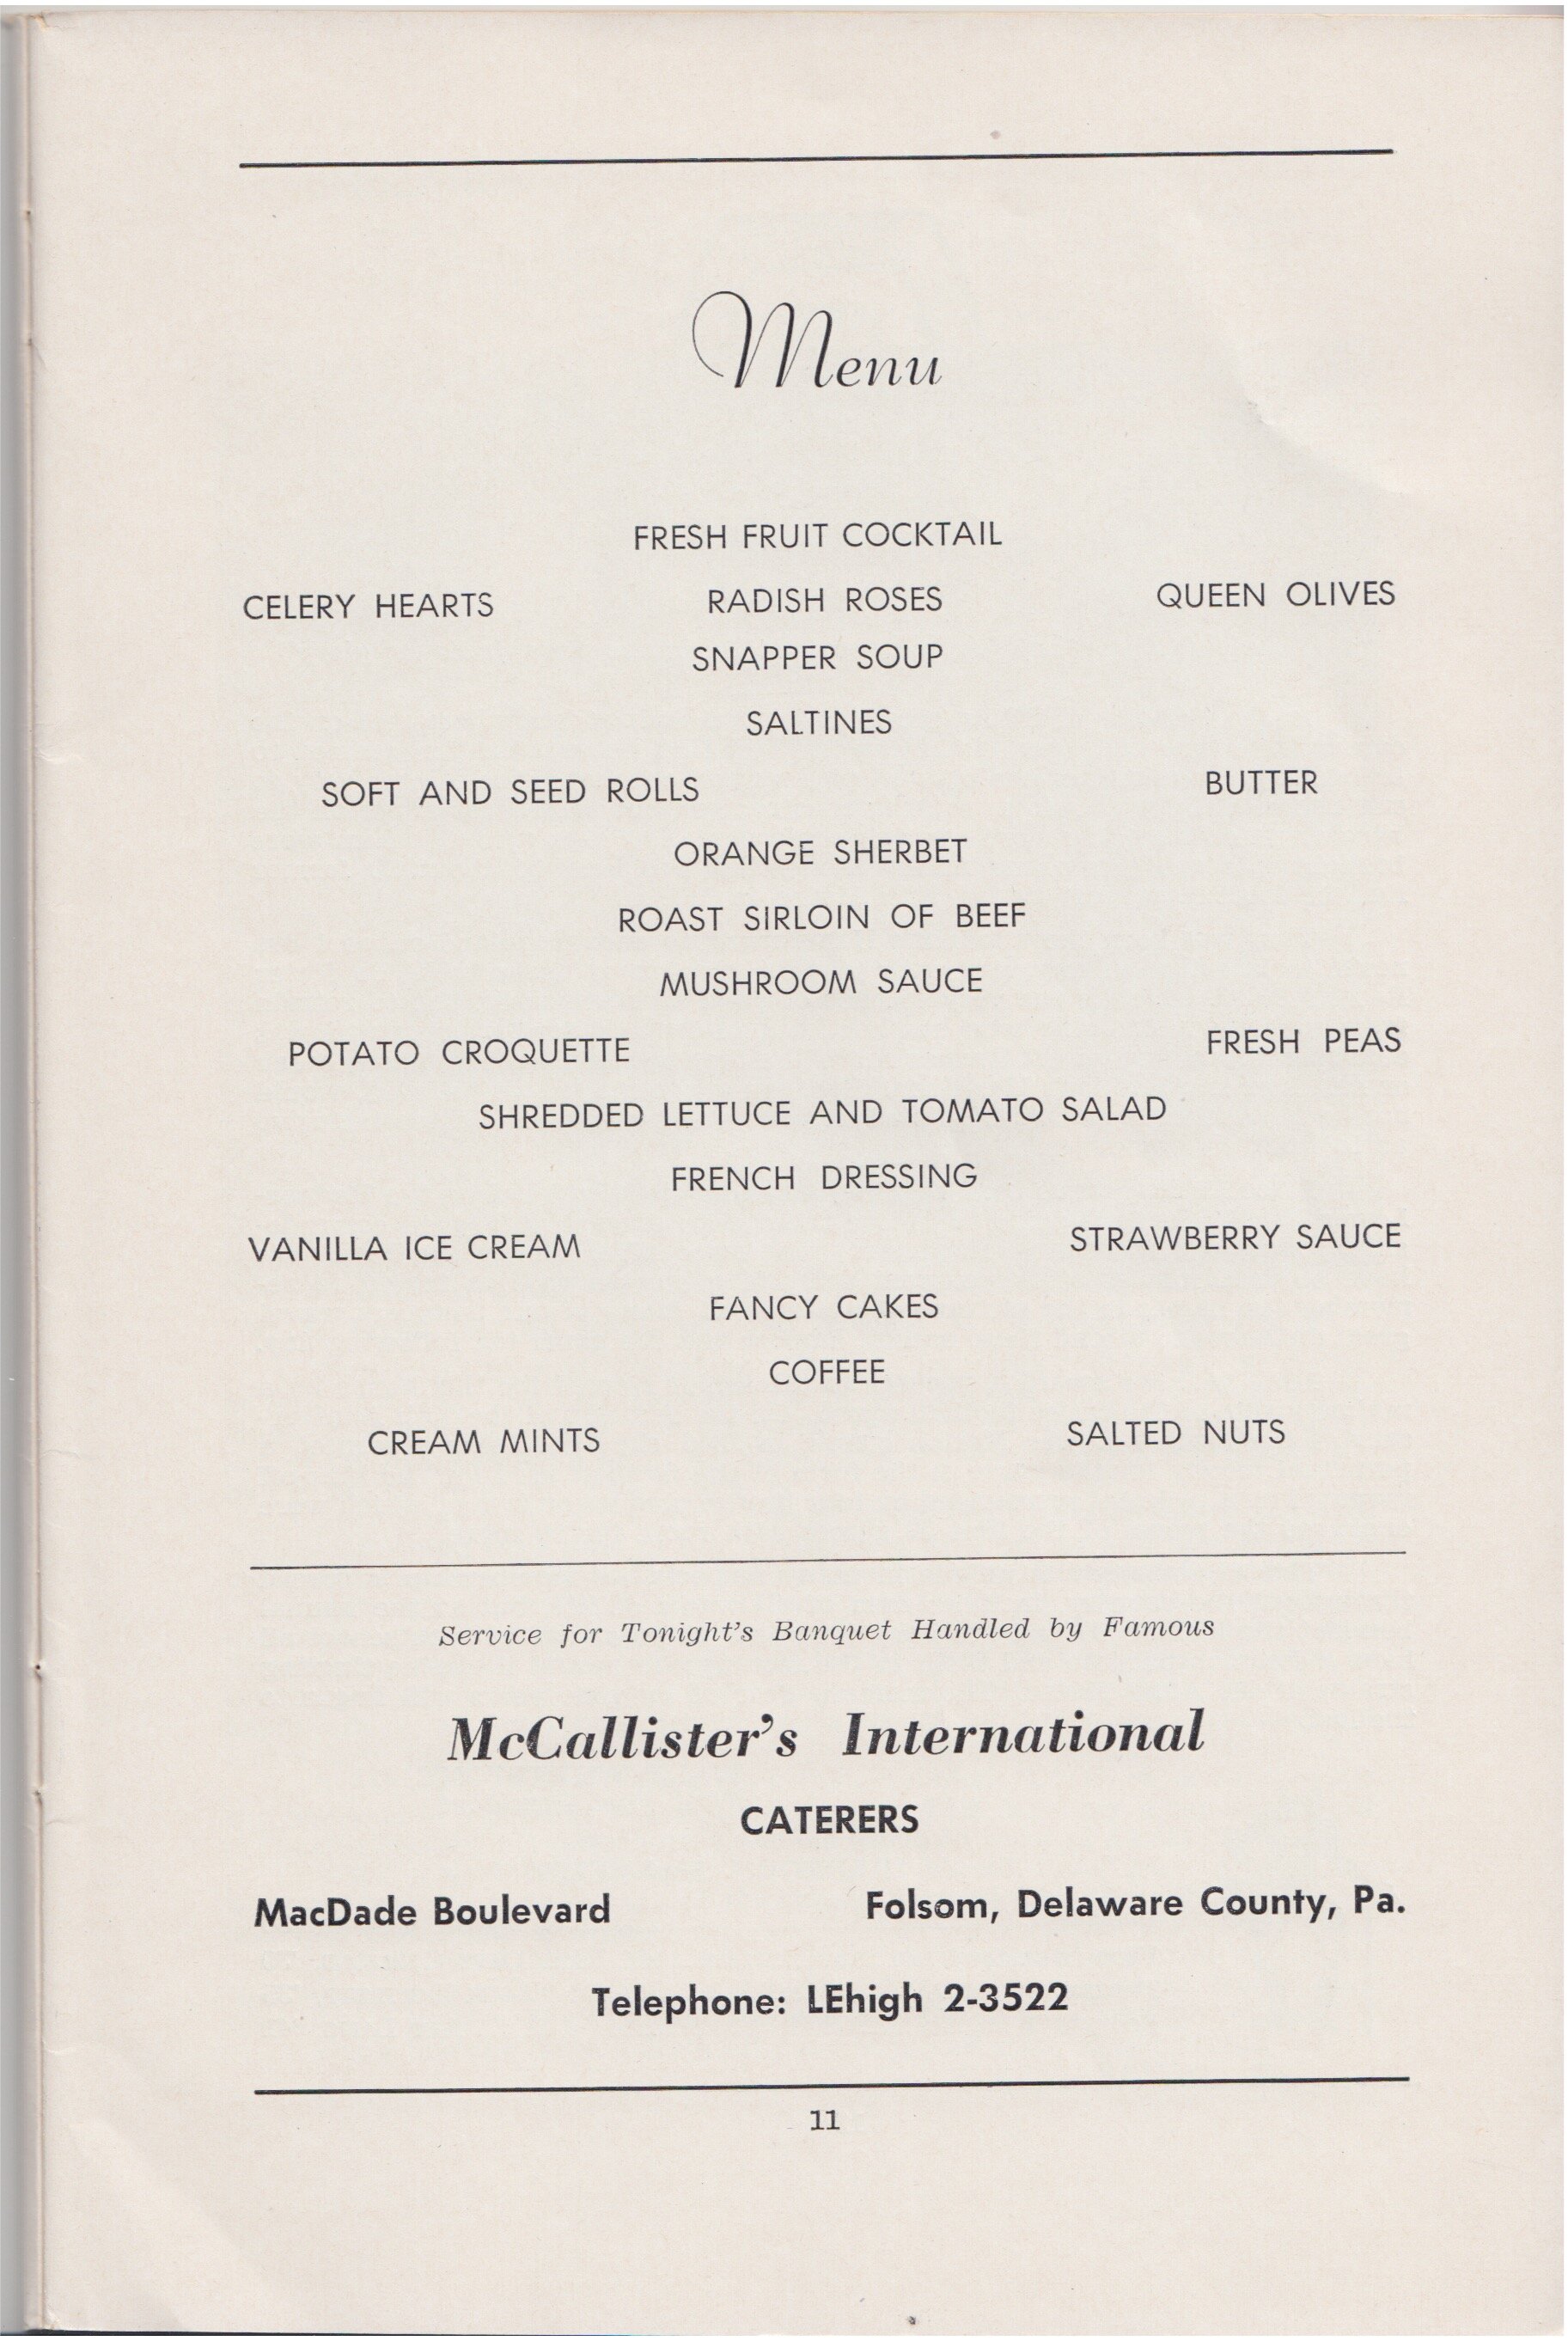 1957 BanquetRHistS 8.jpeg